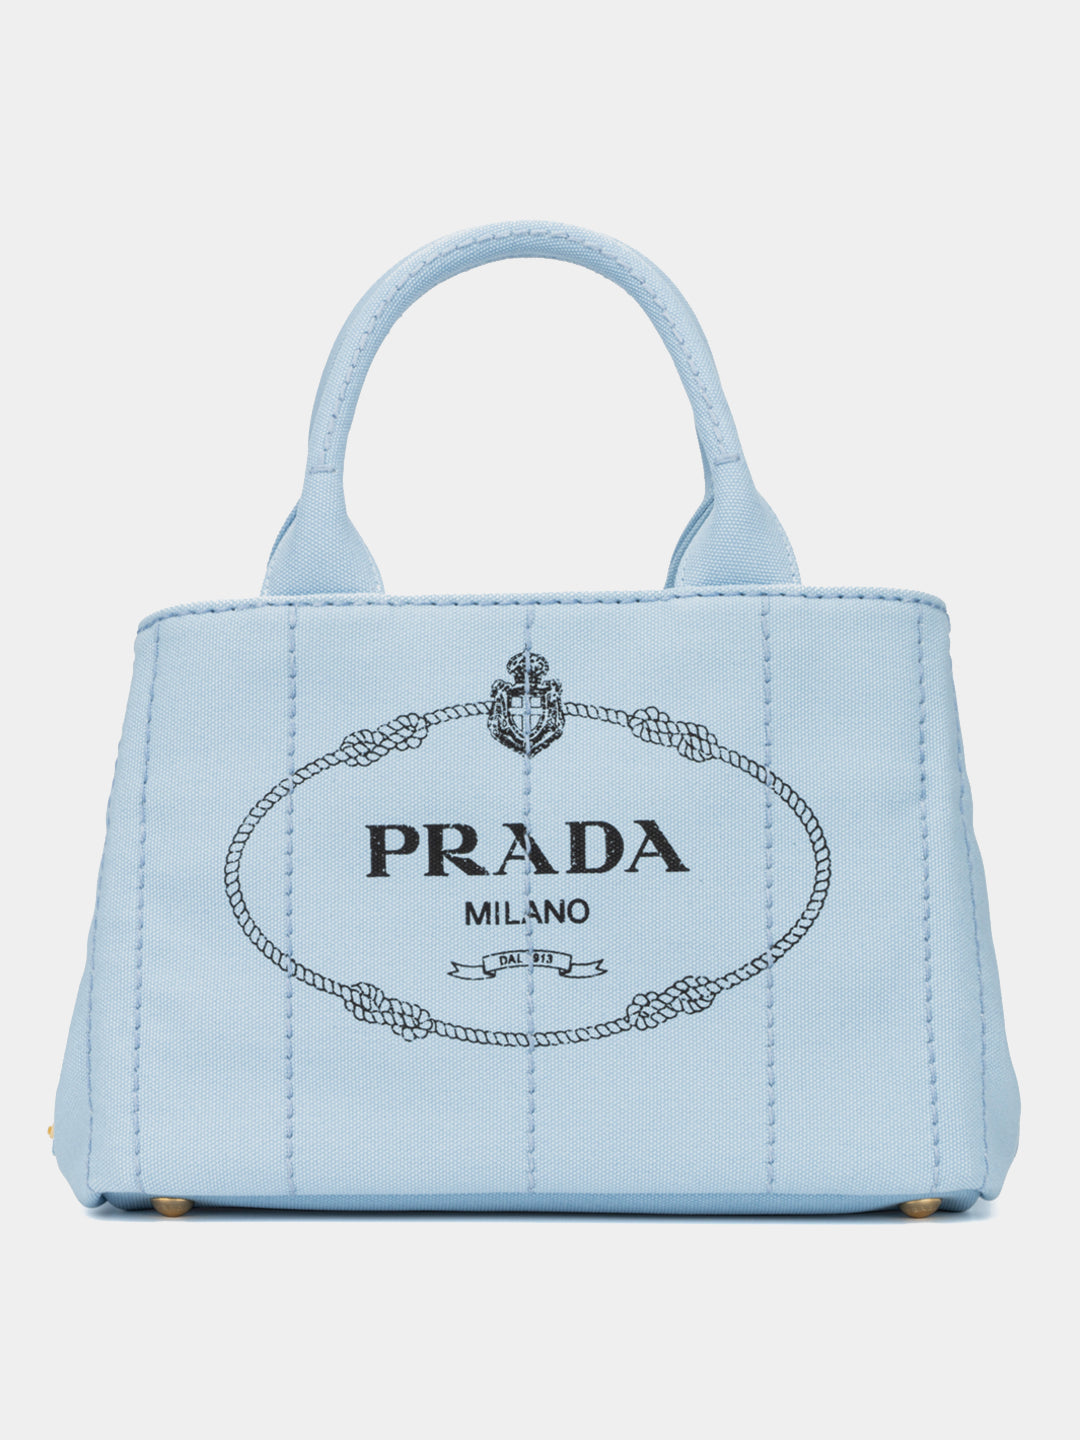 Prada Galleria Tote Bag In Celeste